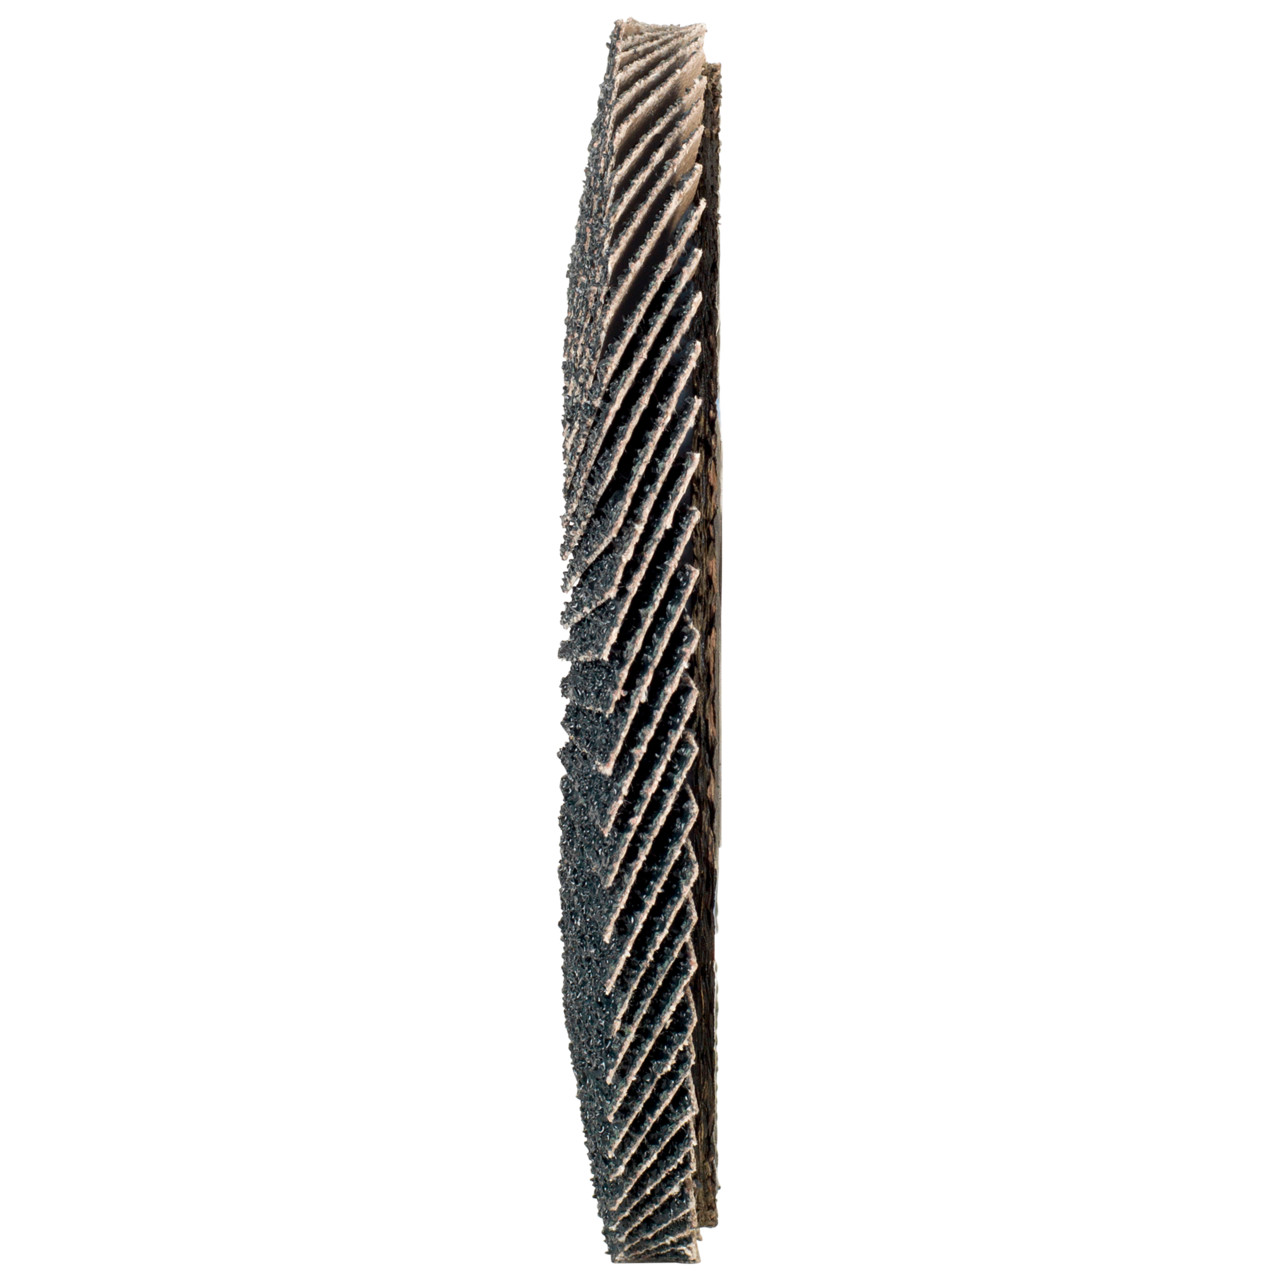 Tyrolit Arandela dentada DxH 125x22,2 2en1 para acero y acero inoxidable, P80, forma: 27A - versión desplazada (versión con cuerpo de soporte de fibra de vidrio), Art. 668665